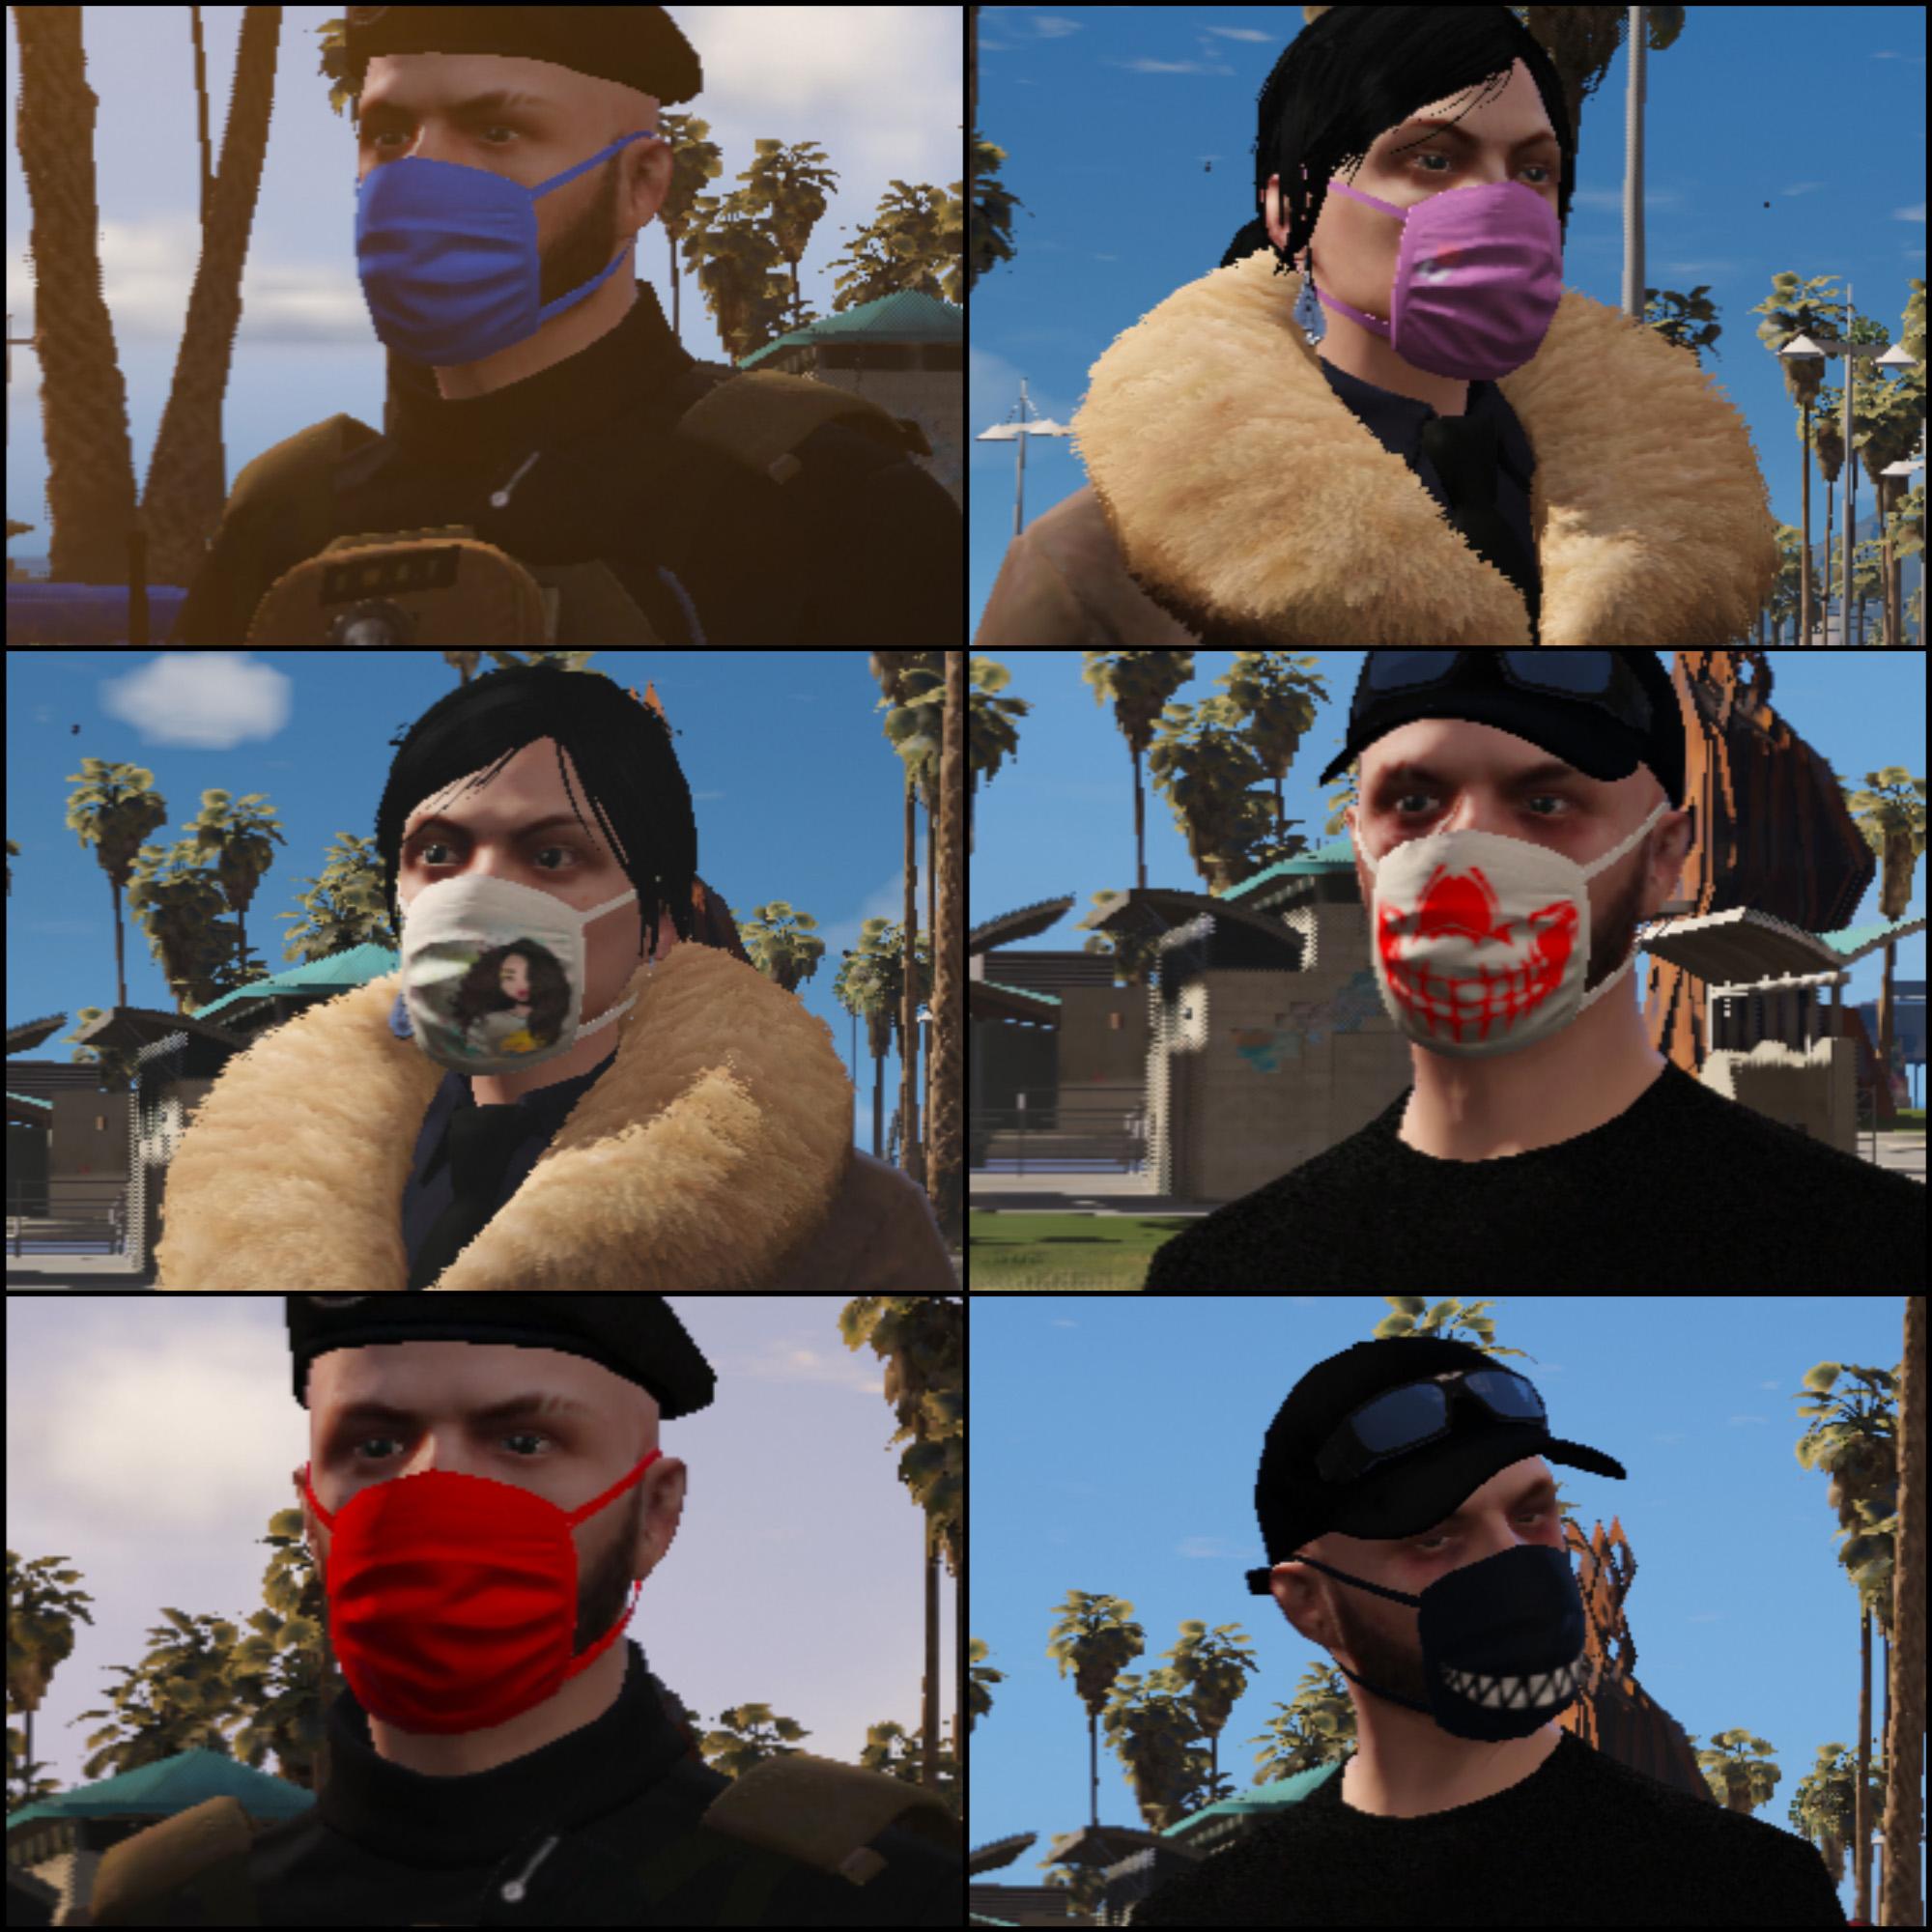 Download Masks From Online GTAV v2.1 for GTA 5